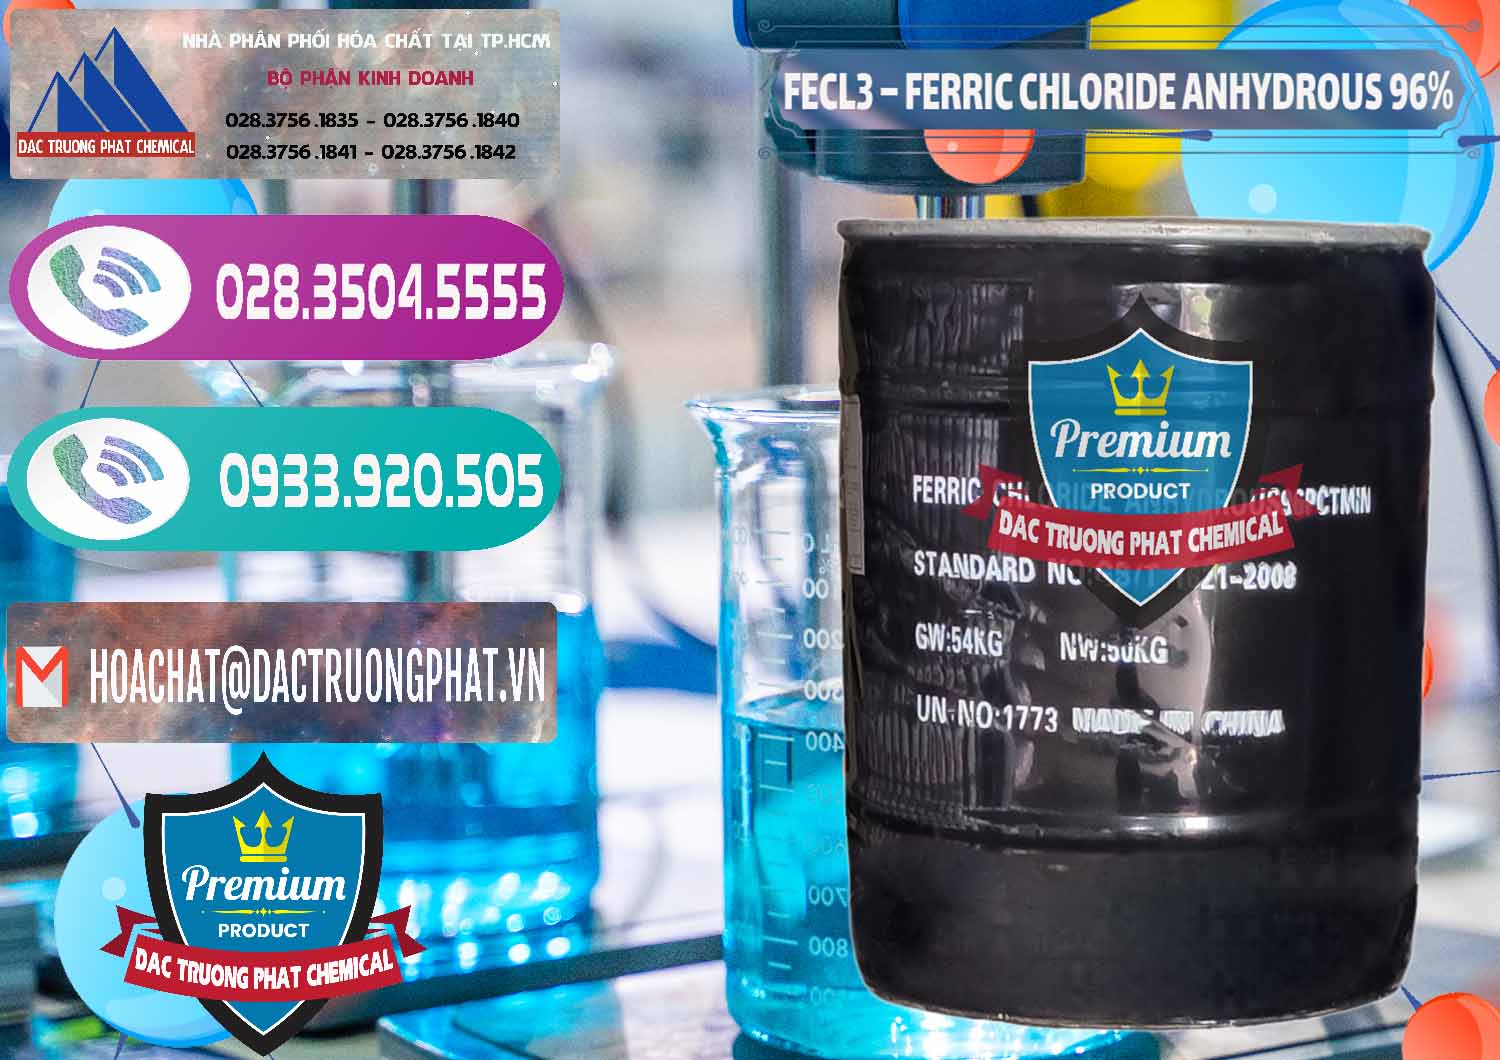 Cty bán _ phân phối FECL3 – Ferric Chloride Anhydrous 96% Trung Quốc China - 0065 - Nơi chuyên phân phối và bán hóa chất tại TP.HCM - hoachatxulynuoc.com